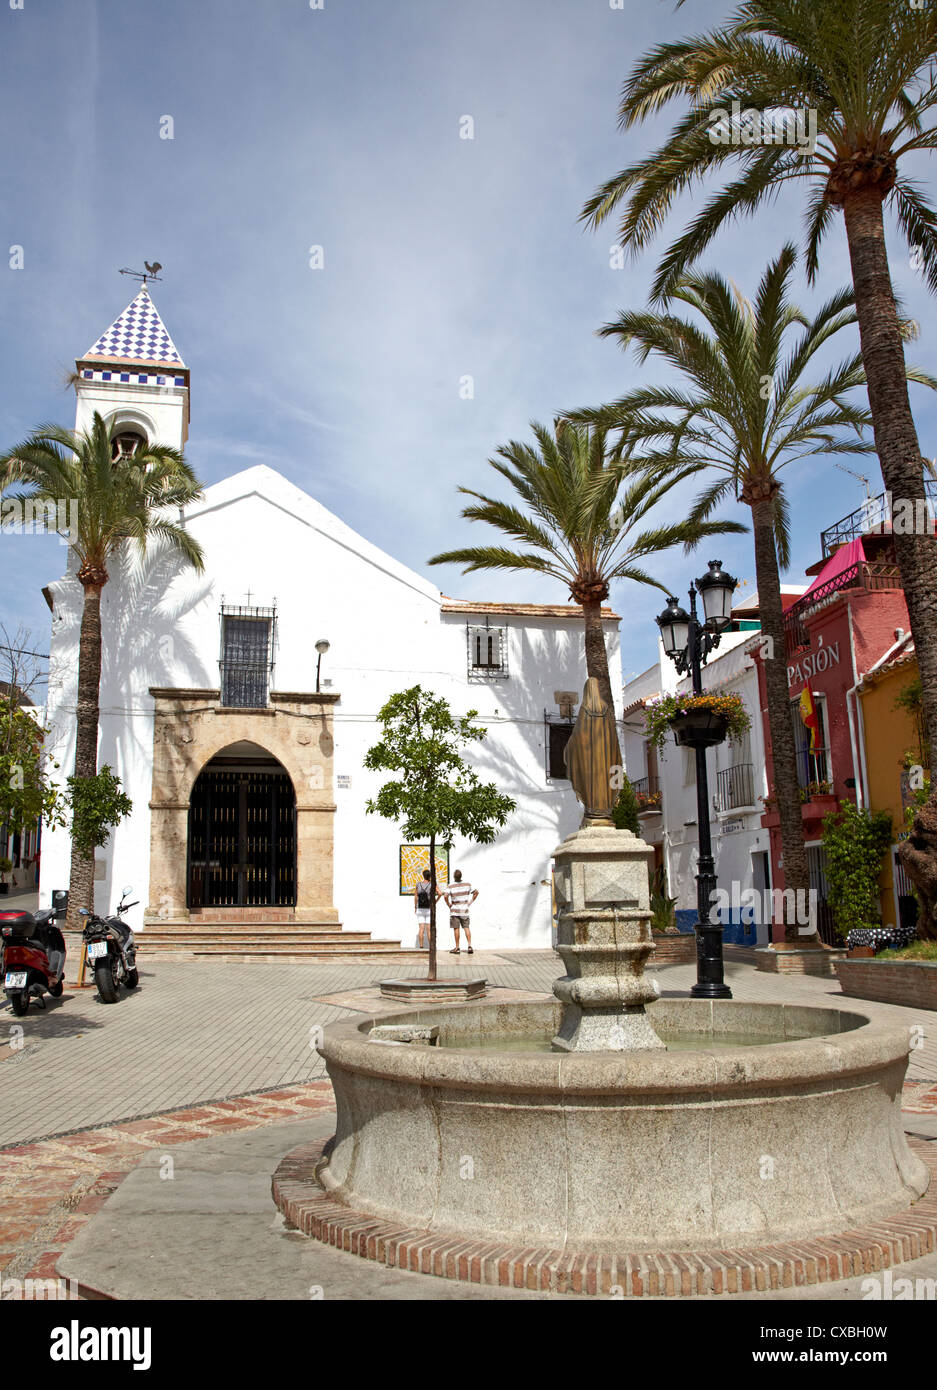 L'église traditionnelle et la place de la vieille ville de Marbella espagne Banque D'Images